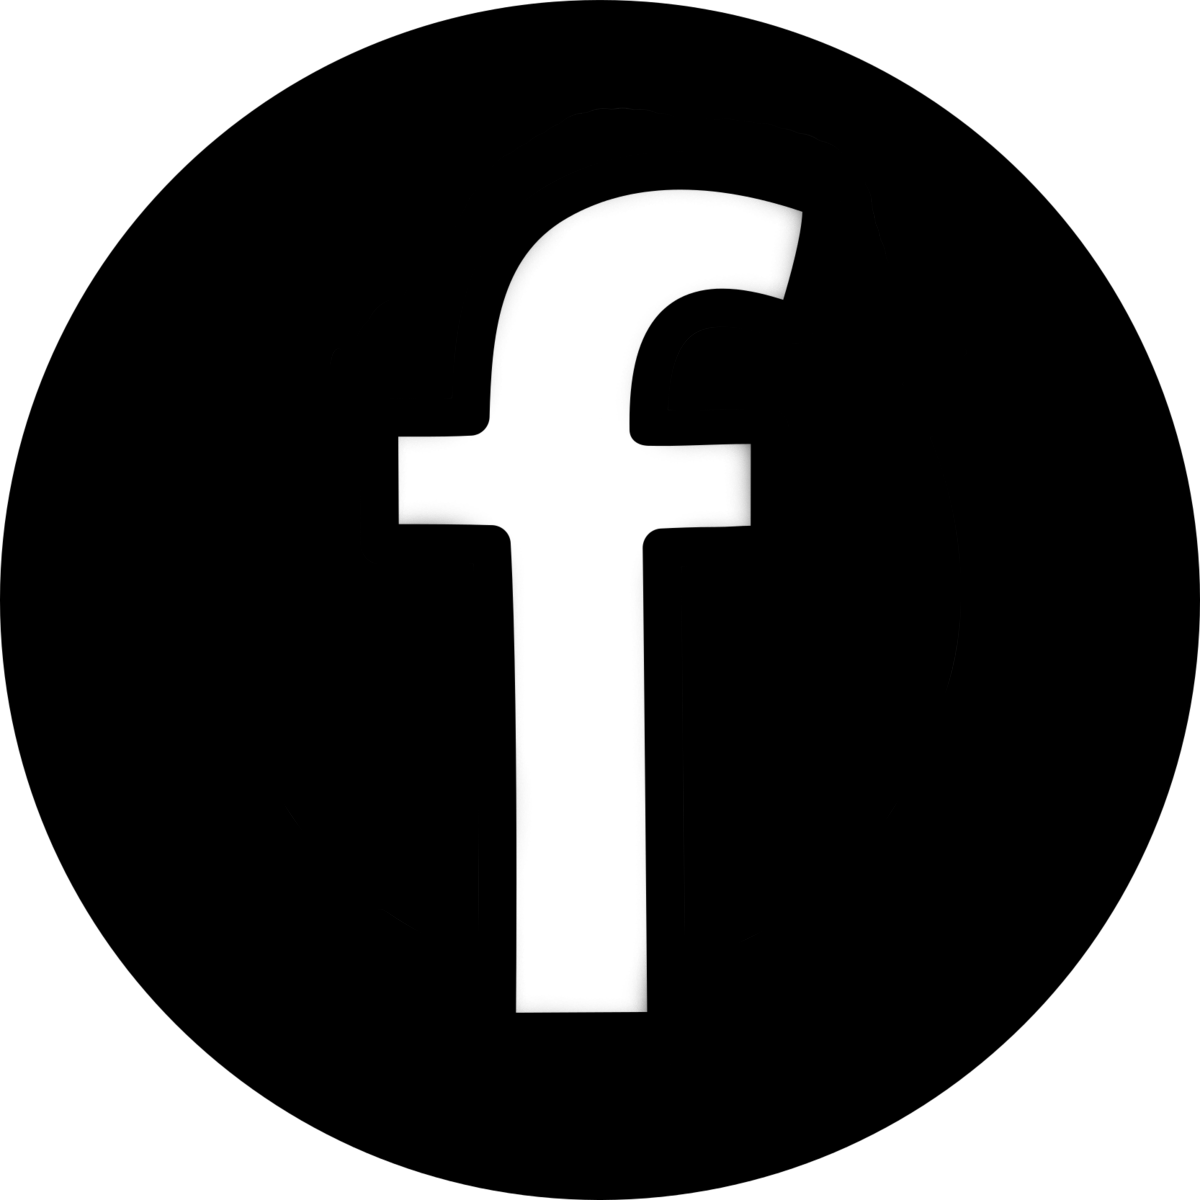 Facebook black radius transparent #38367 - Free Icons and ...